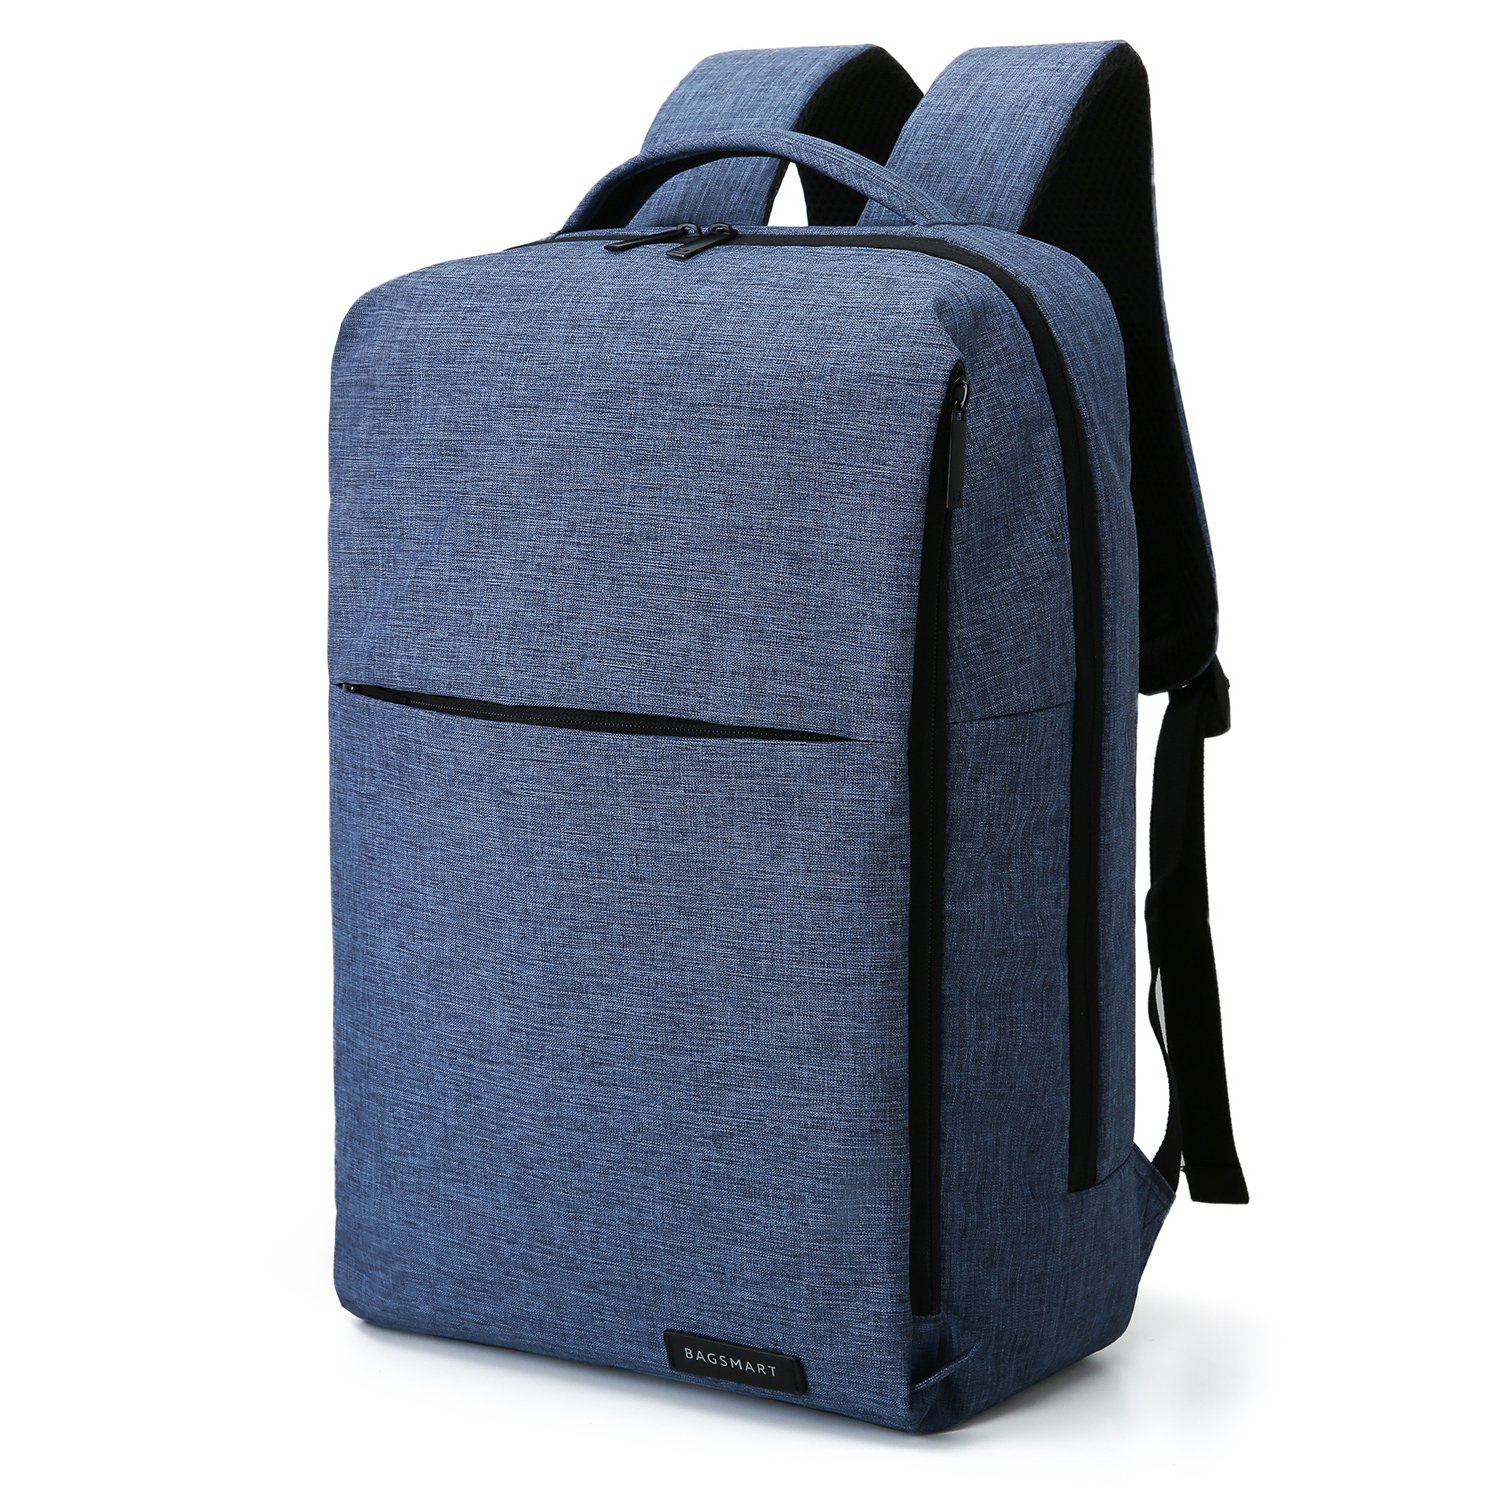 Best Back Pack For laptops 2020